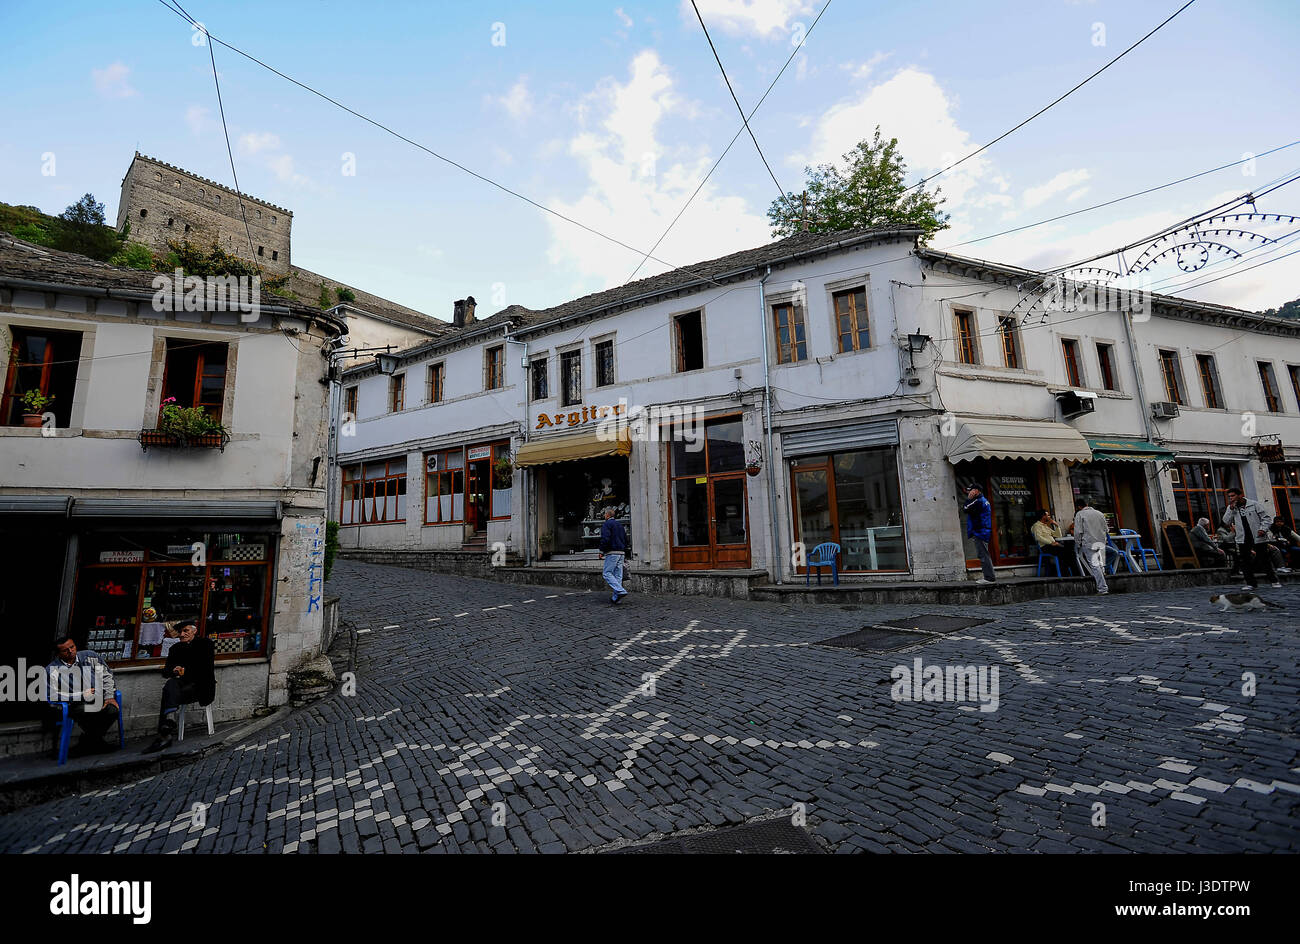 ALBANIA. Gjirokaster. 2011. Street scene in Gjirokaster Stock Photo